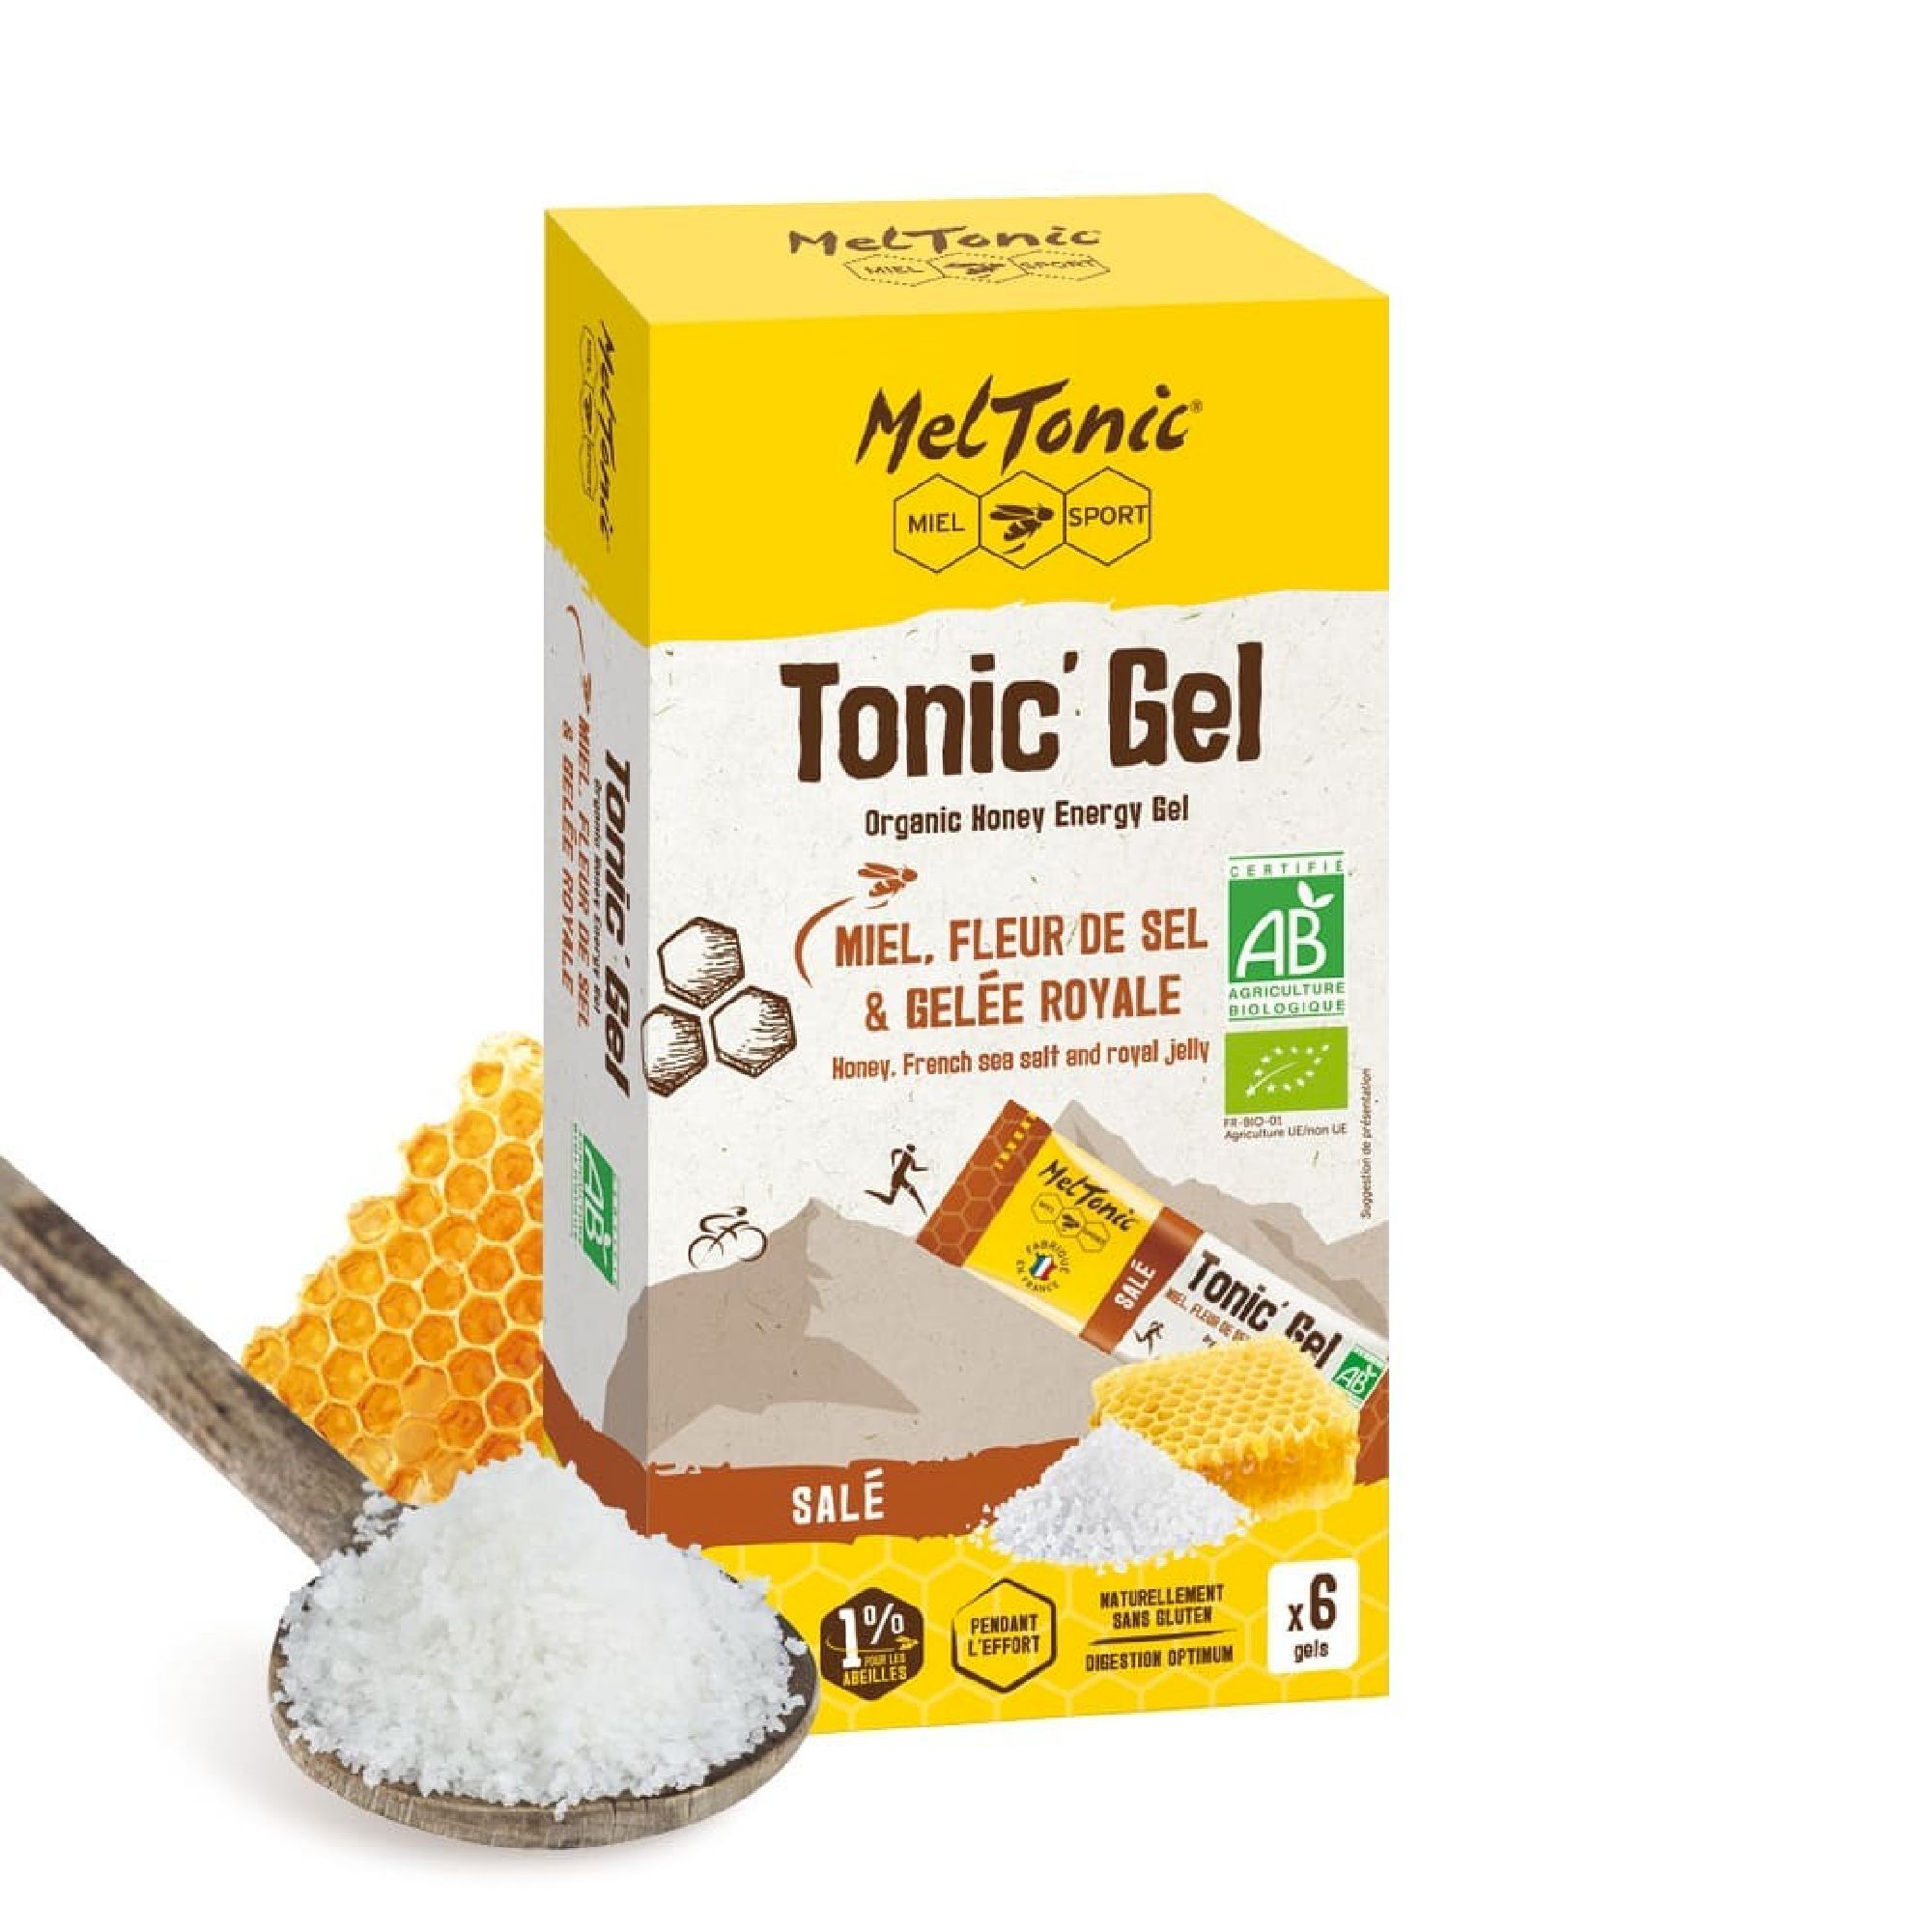 Meltonic Tonic Gel Bio Salé - Étui 6 Gels - Gel énergétique | Hardloop